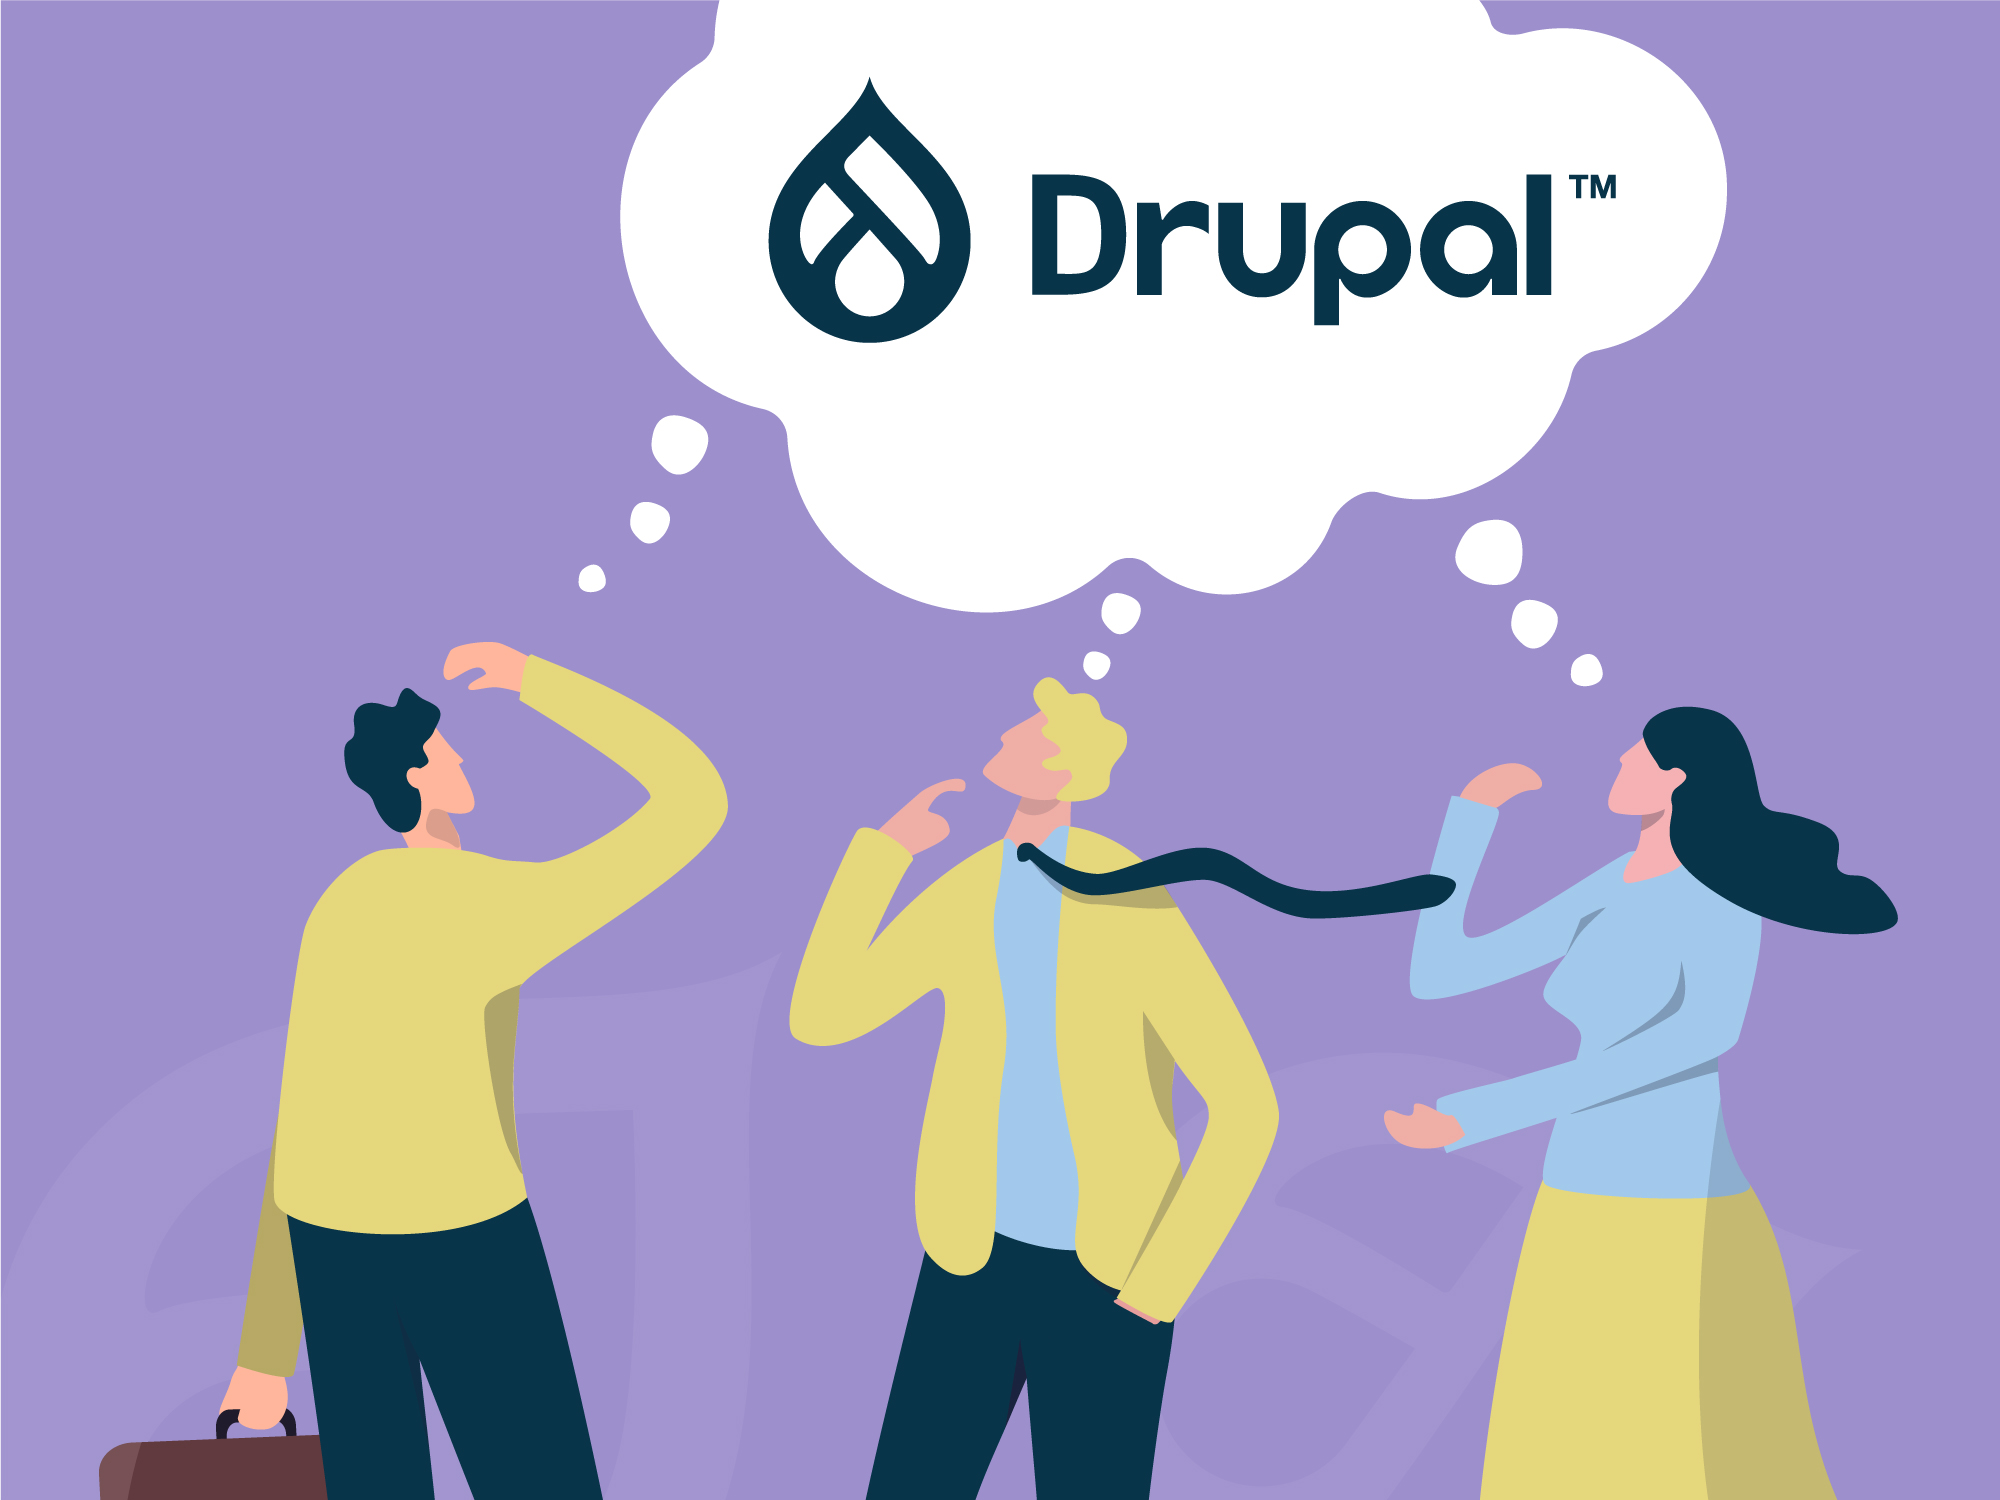 Is Drupal iets voor jou?